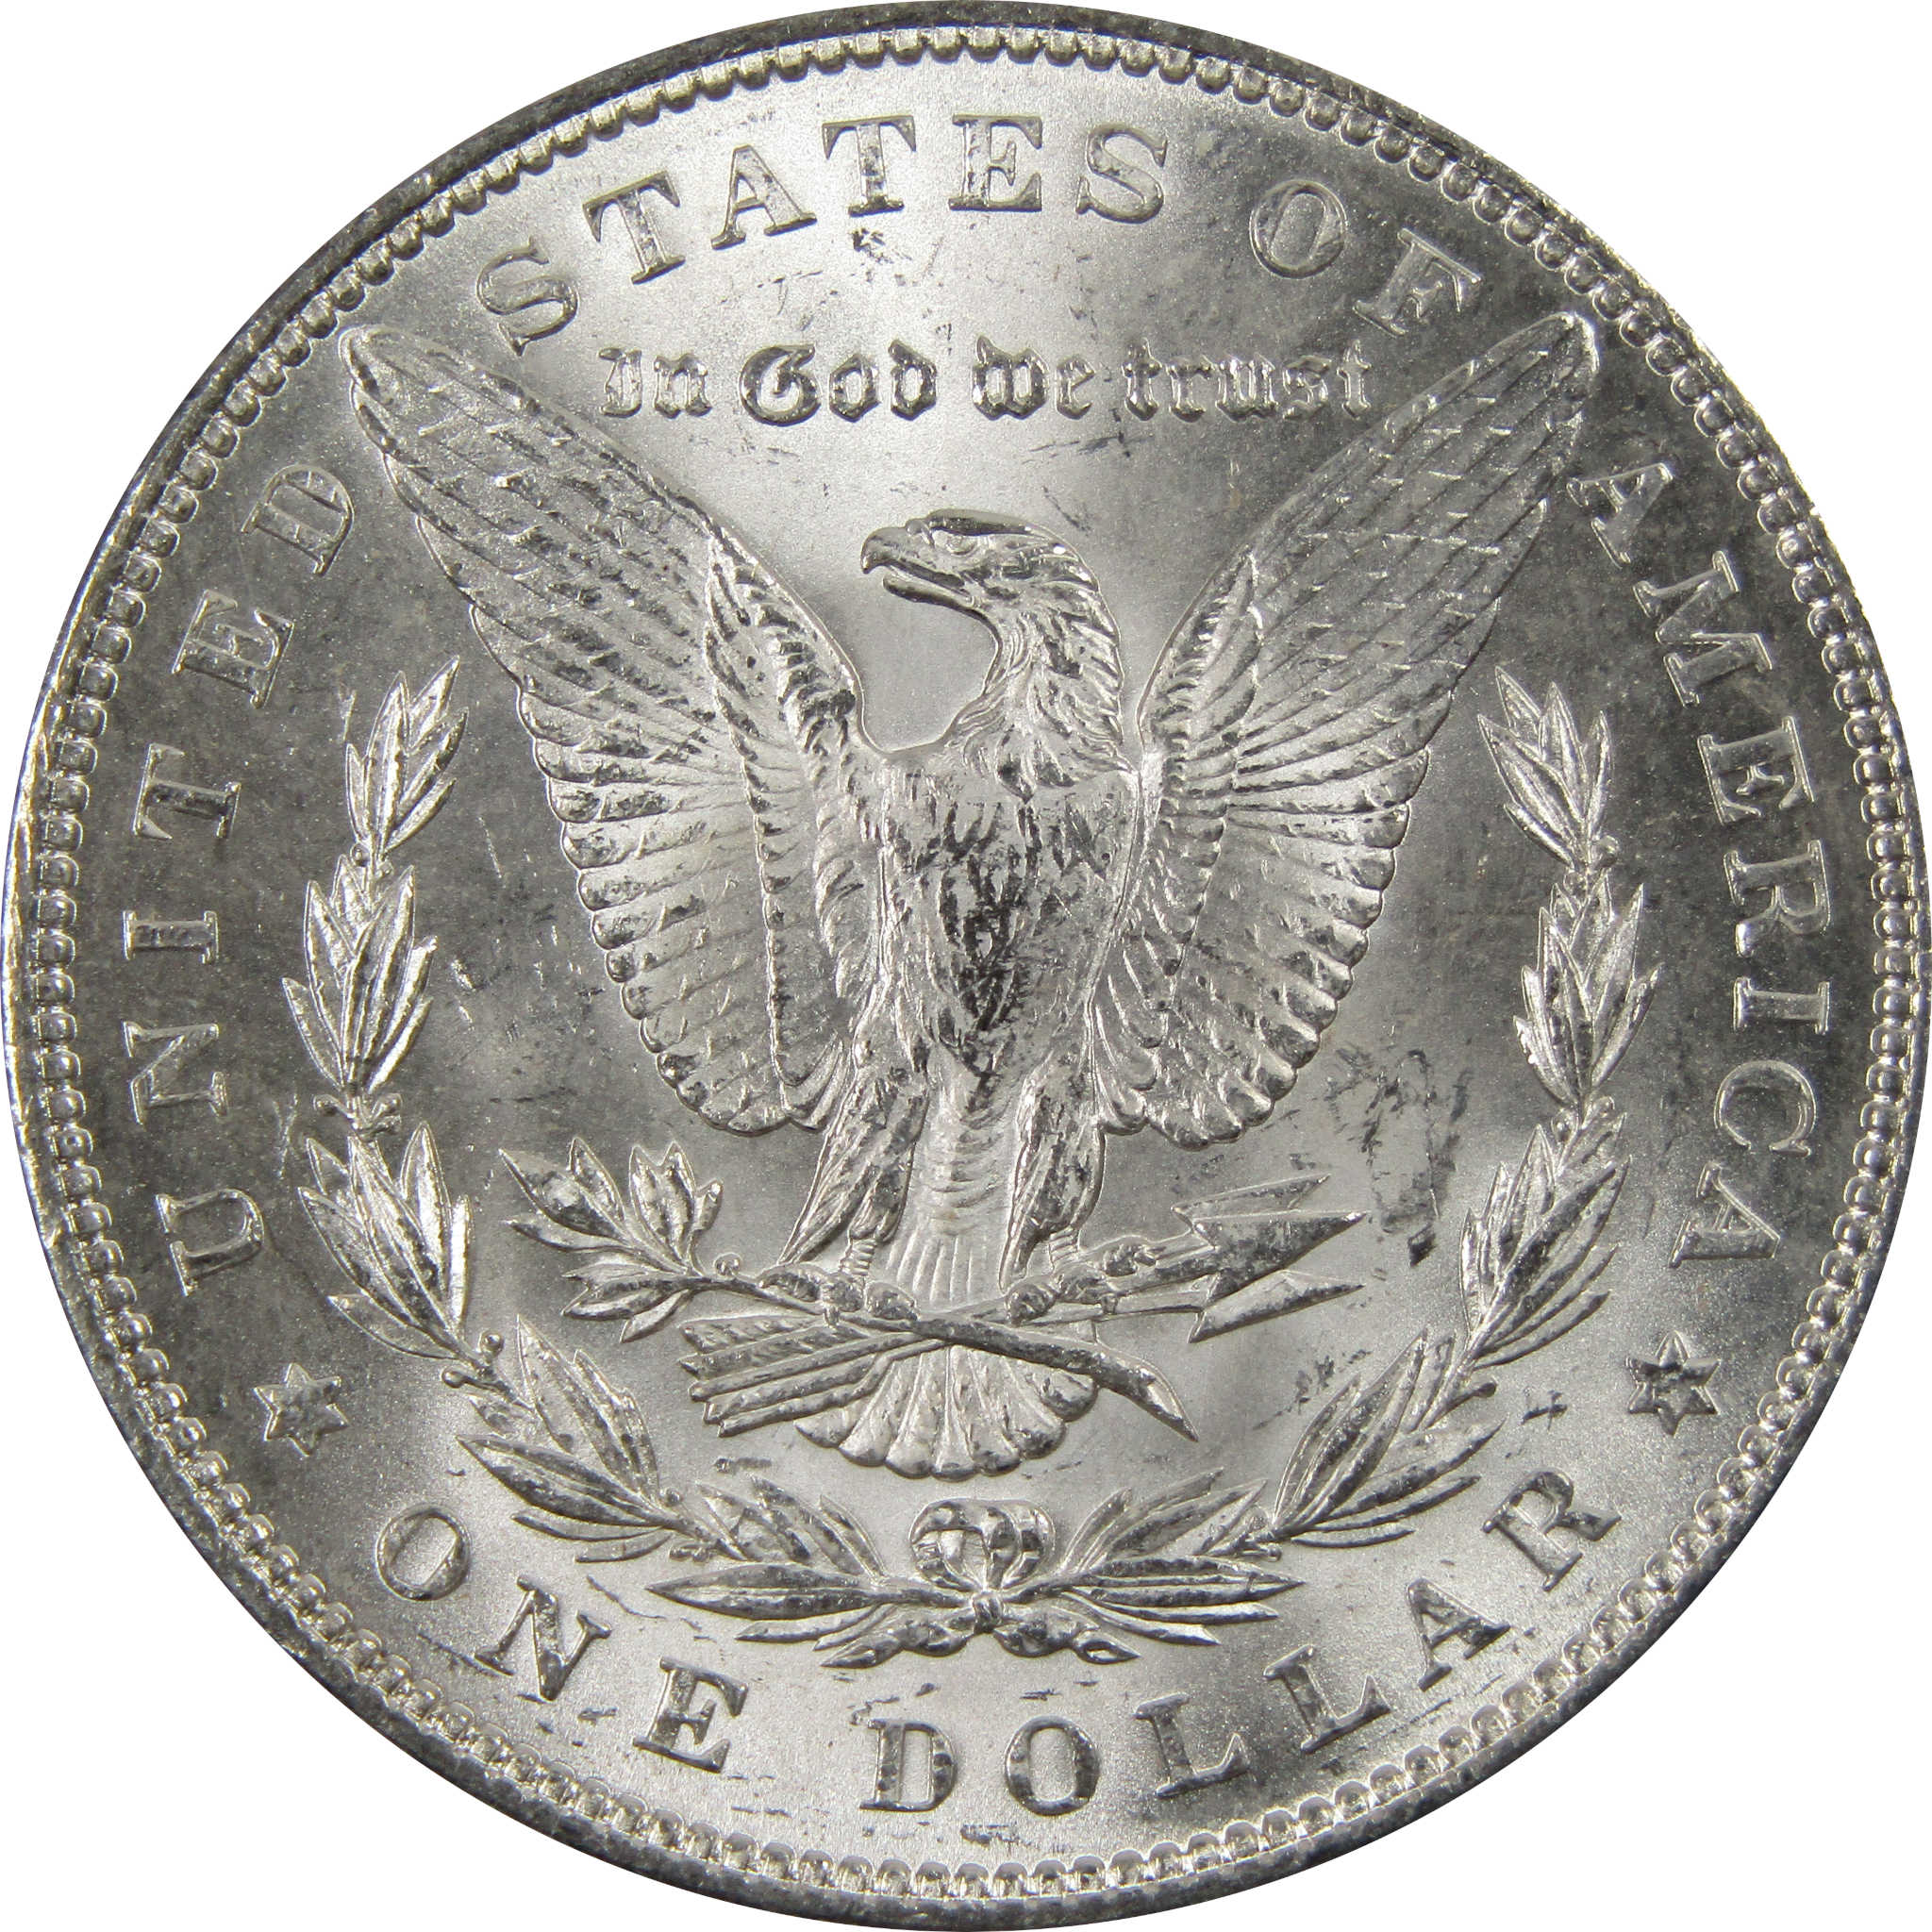 1899 Morgan Dollar BU Uncirculated 90% Silver $1 Coin SKU:I7309 - Morgan coin - Morgan silver dollar - Morgan silver dollar for sale - Profile Coins &amp; Collectibles